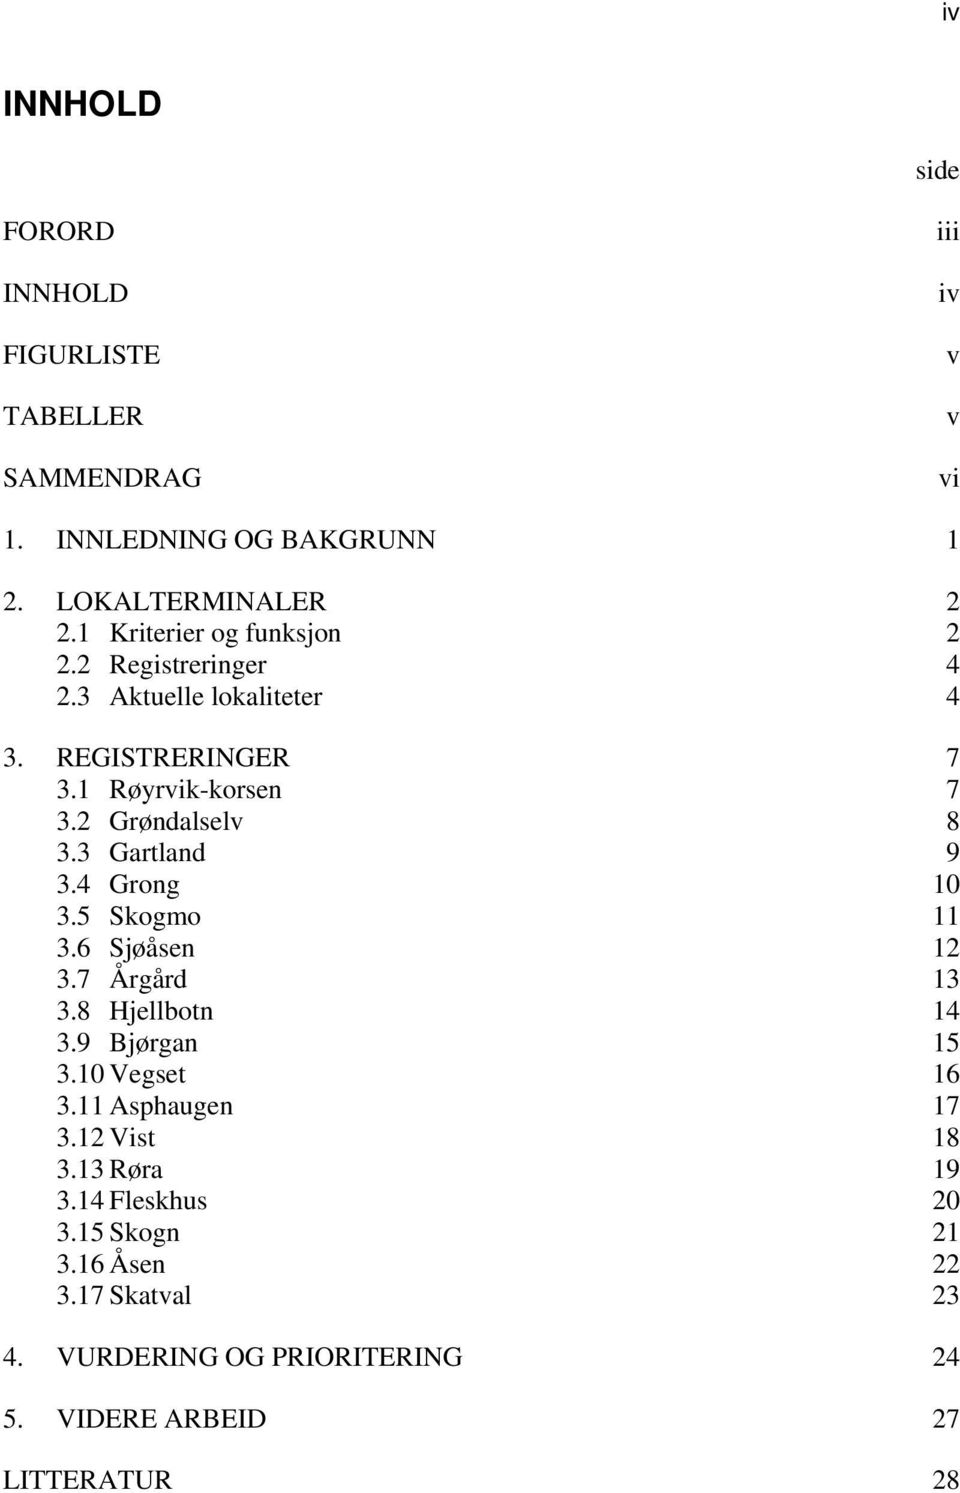 3 Gartland 9 3.4 Grong 10 3.5 Skogmo 11 3.6 Sjøåsen 12 3.7 Årgård 13 3.8 Hjellbotn 14 3.9 Bjørgan 15 3.10 Vegset 16 3.11 Asphaugen 17 3.